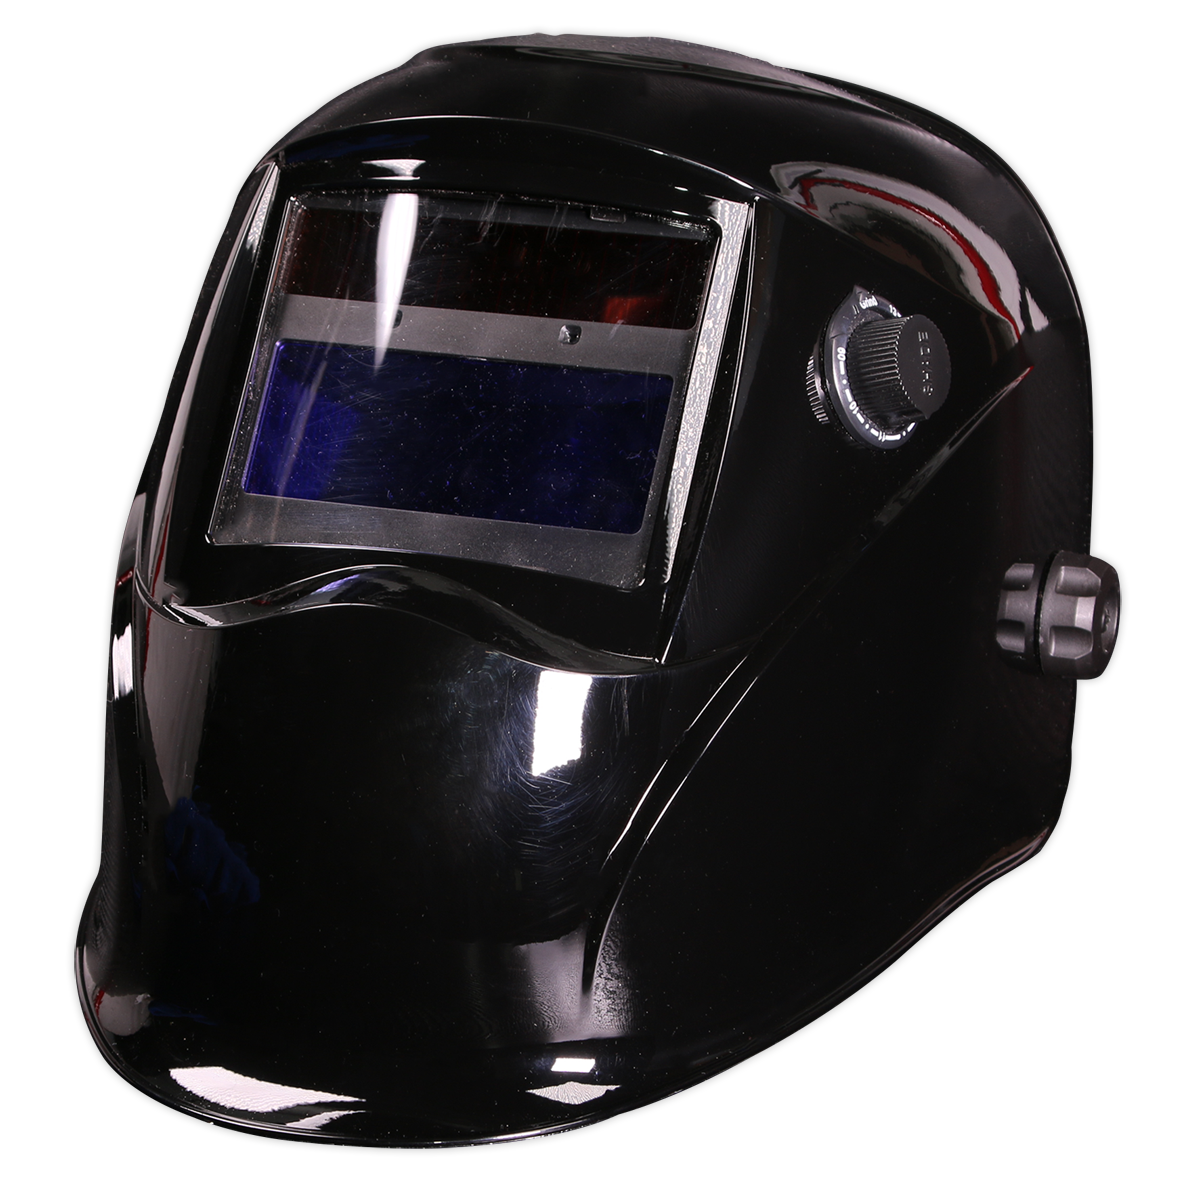 Sealey Welding Helmet Auto Darkening - Shade 9-13 - Black